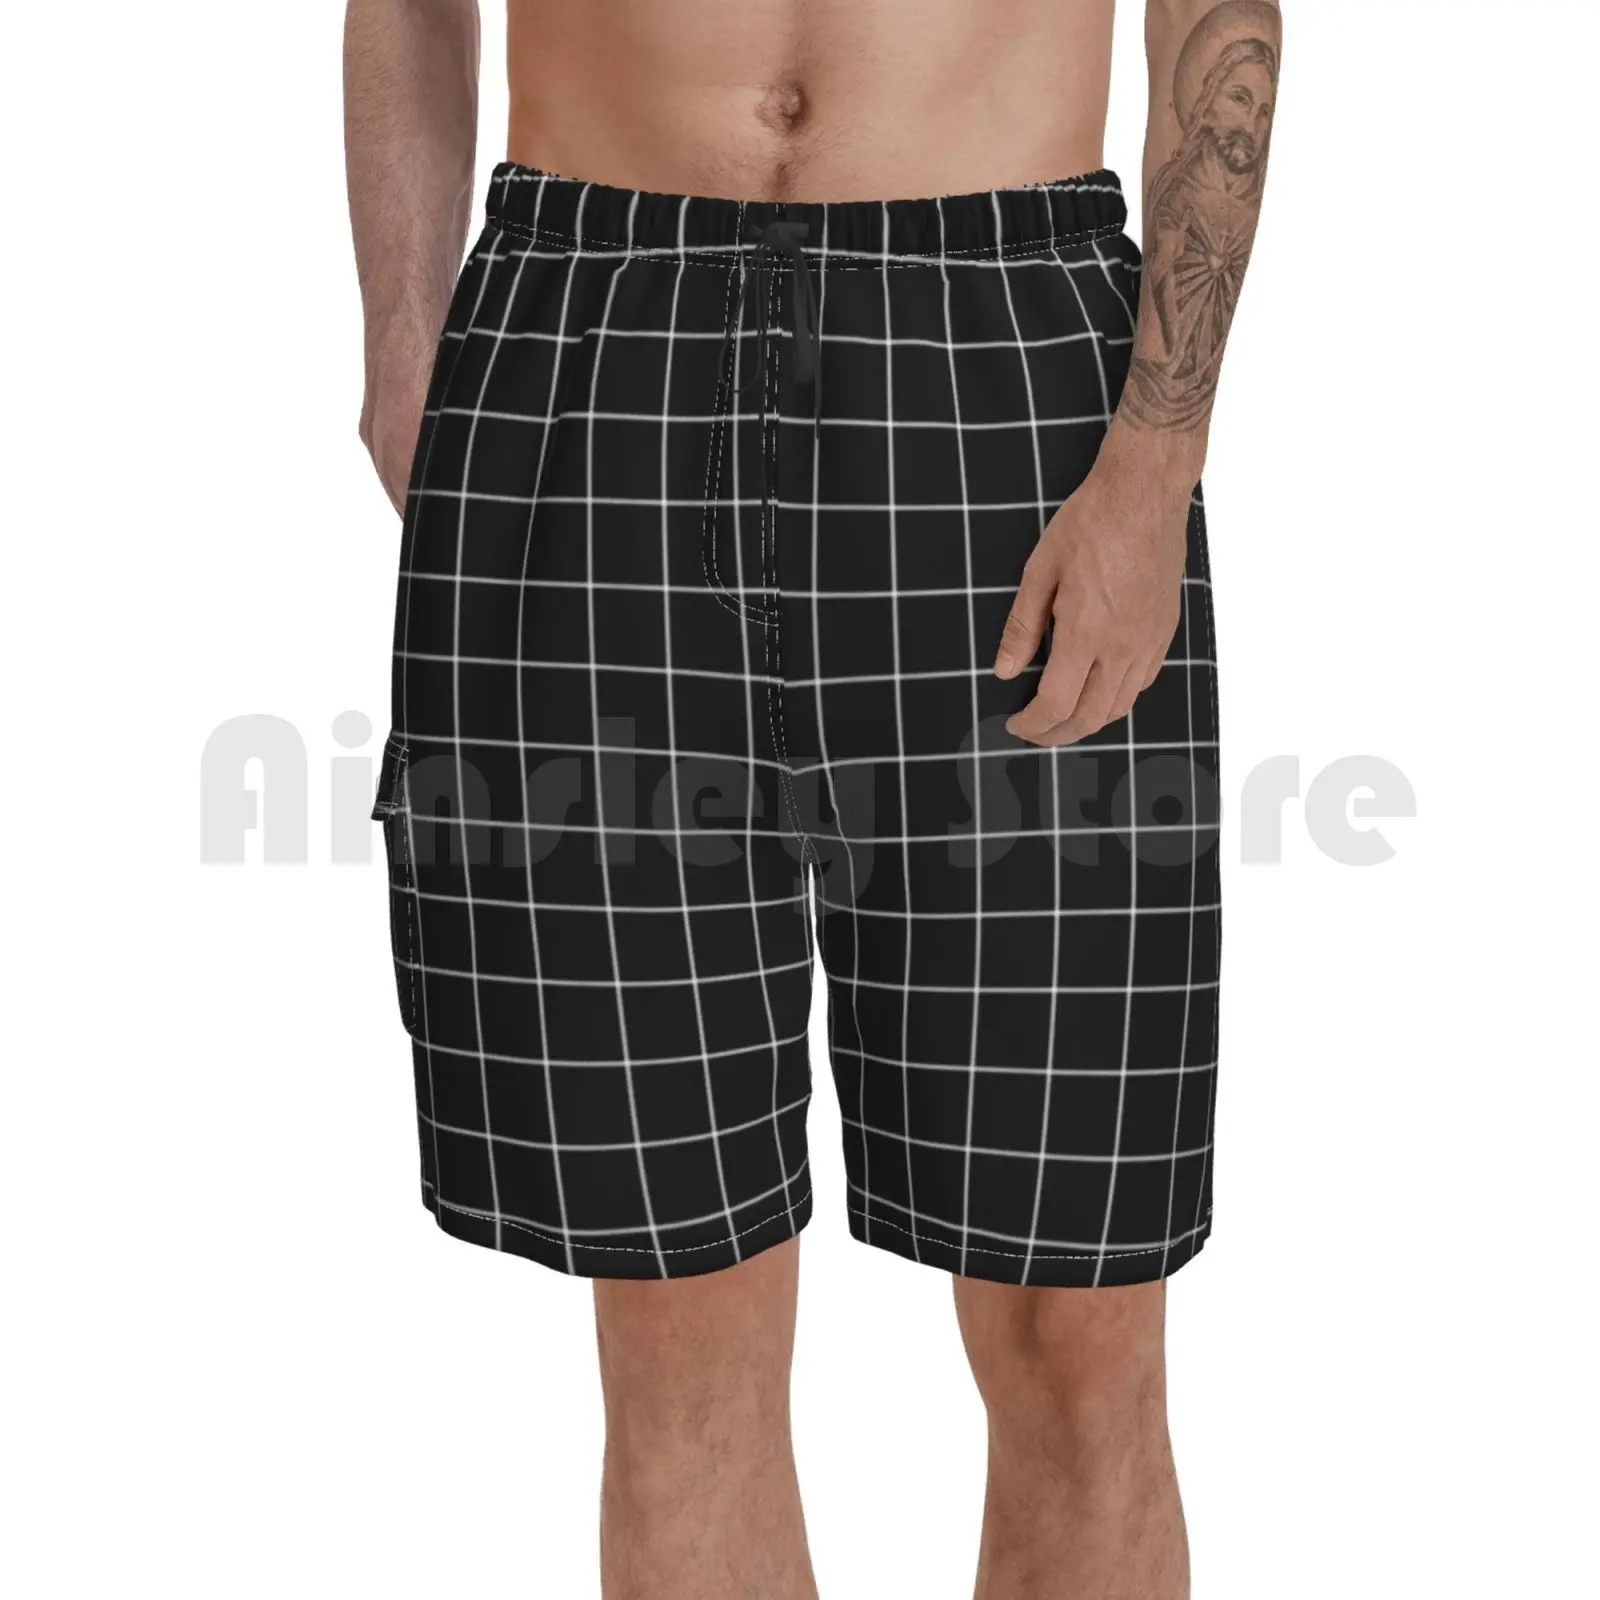 

Черный оконное стекло пляжные шорты с рисунком мужские пляжные шорты для купания оконное стекло узор узоры монохромный монохром